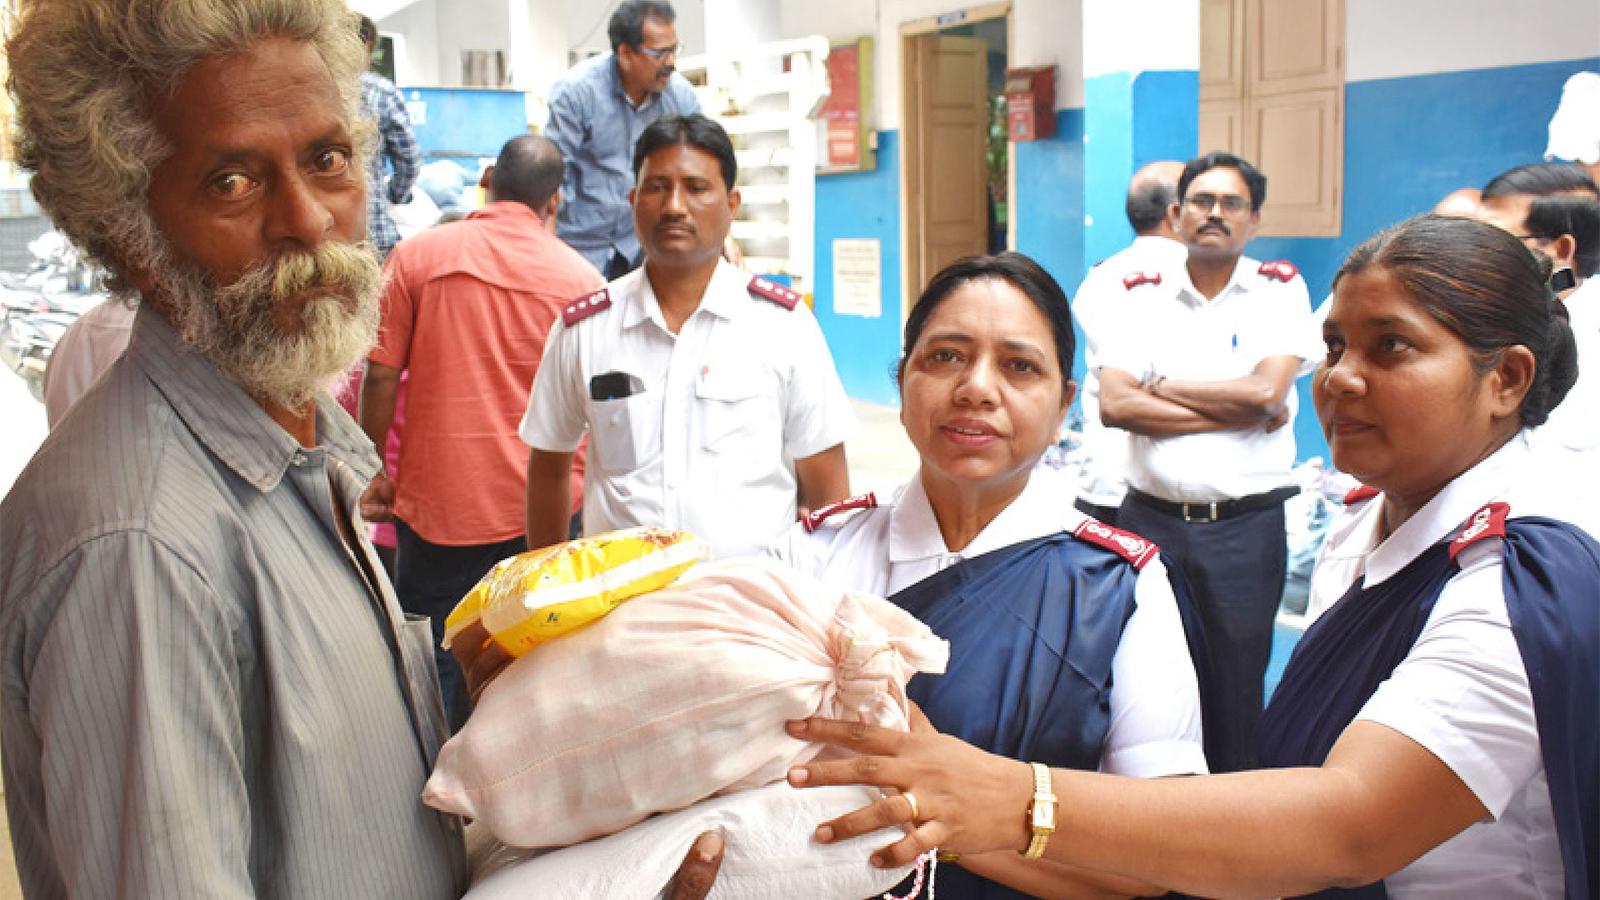 En äldre man i Indien tar emot säckar med förnödenheter från två kvinnor som bär Frälsningsarméns uniform.